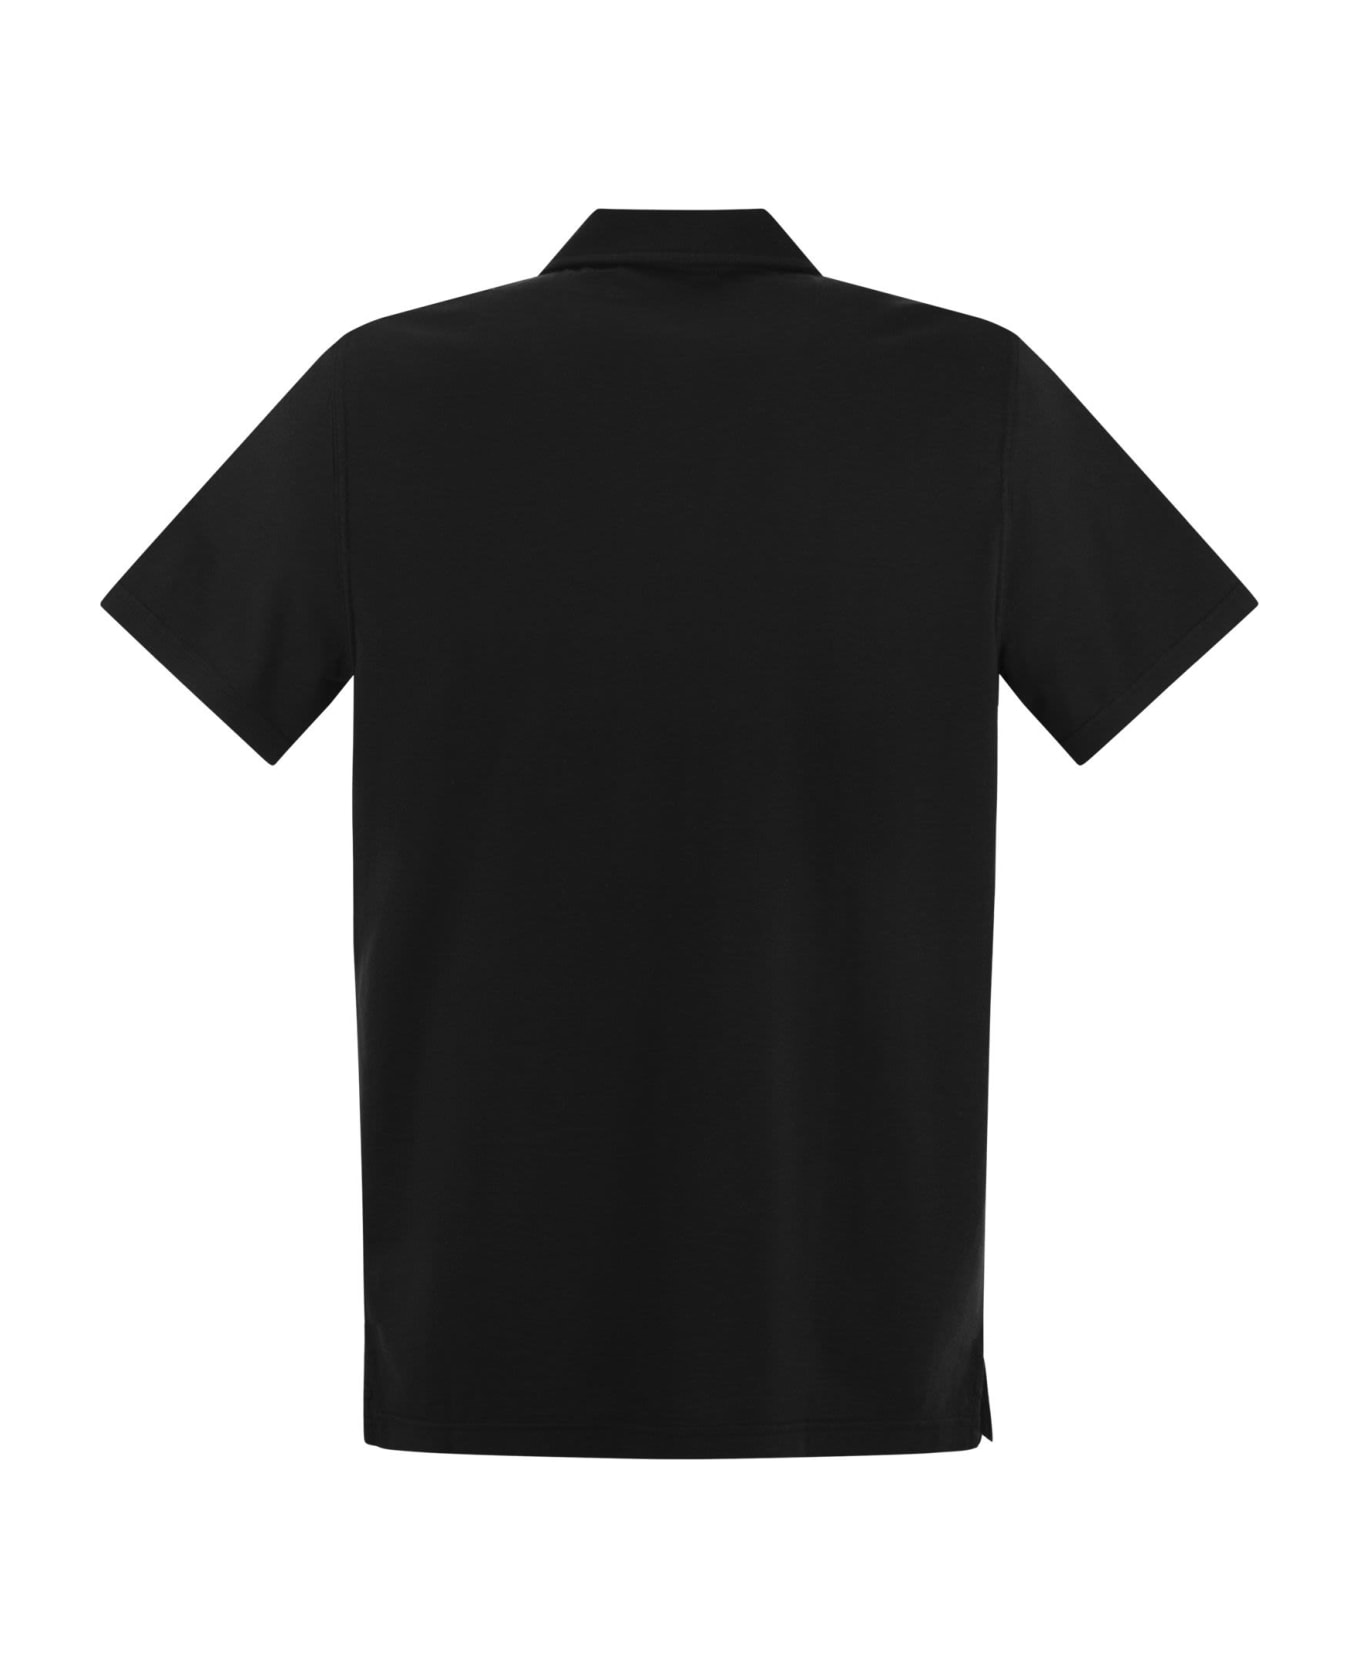 Fedeli Cotton Polo Shirt With Open Collar - Black